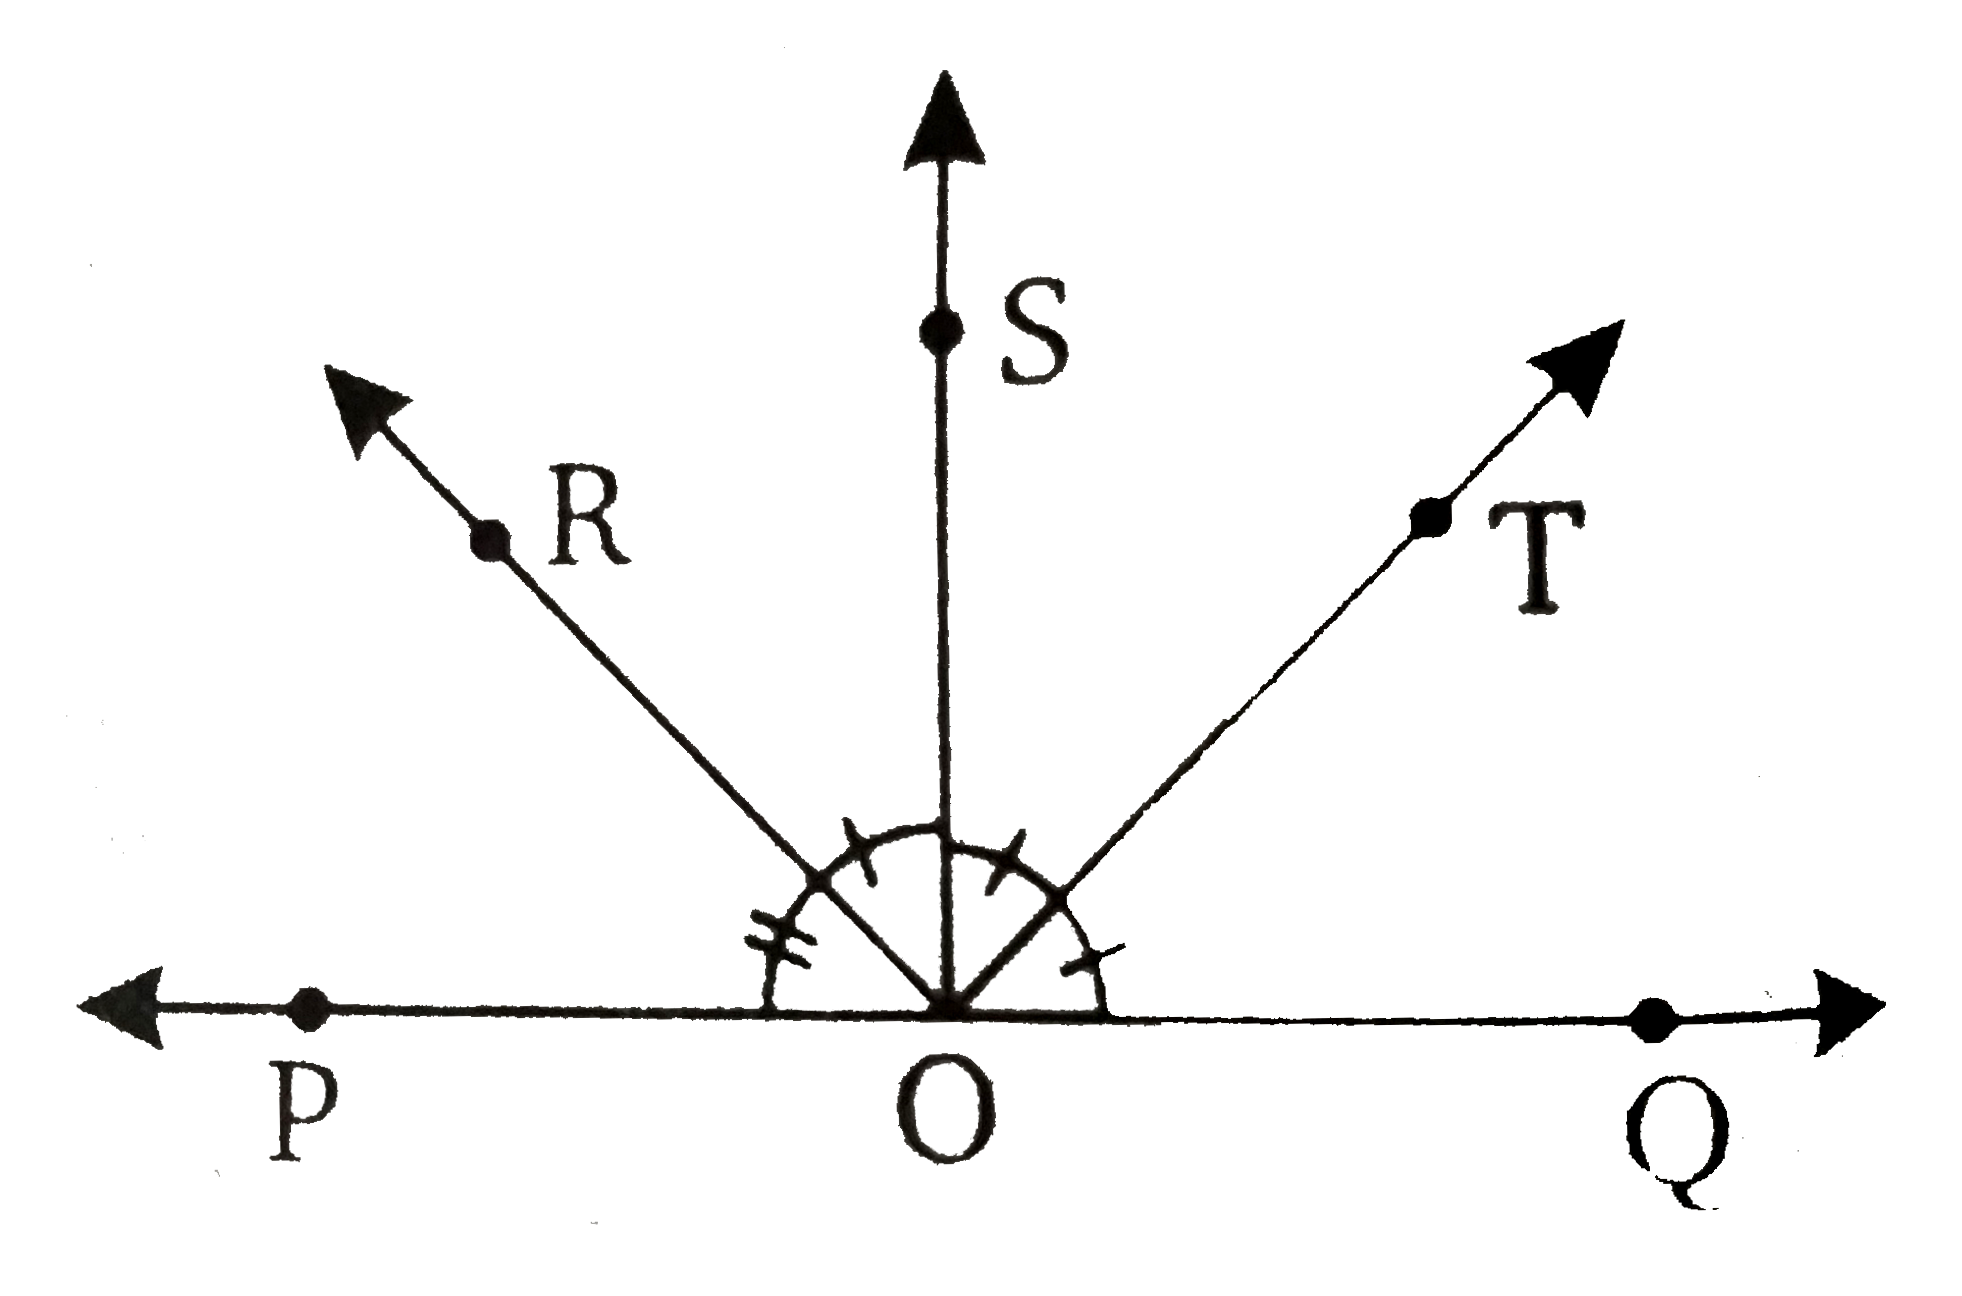 संलग्न चित्र में, किरण OS पर एक रेखा POQ पर है | किरण OR और किरण OT क्रमश : anglePOS और angleSOQ के कोण समद्विभाजक हैं यदि anglePOS=x, तो angleROT ज्ञात कीजिए |